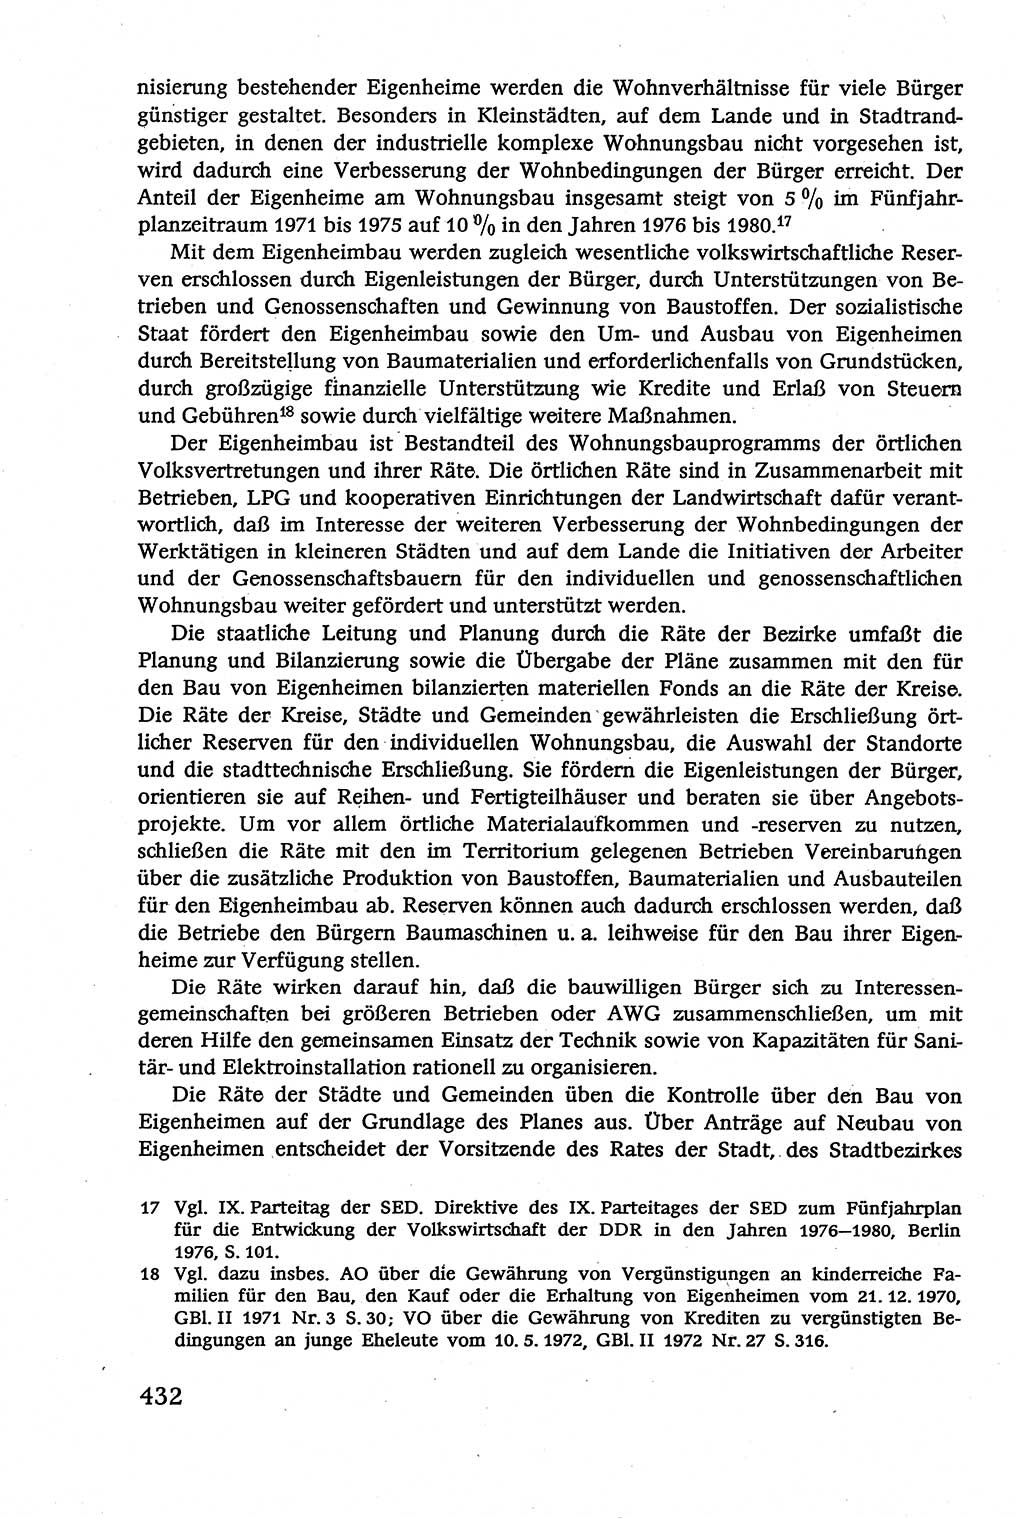 Verwaltungsrecht [Deutsche Demokratische Republik (DDR)], Lehrbuch 1979, Seite 432 (Verw.-R. DDR Lb. 1979, S. 432)